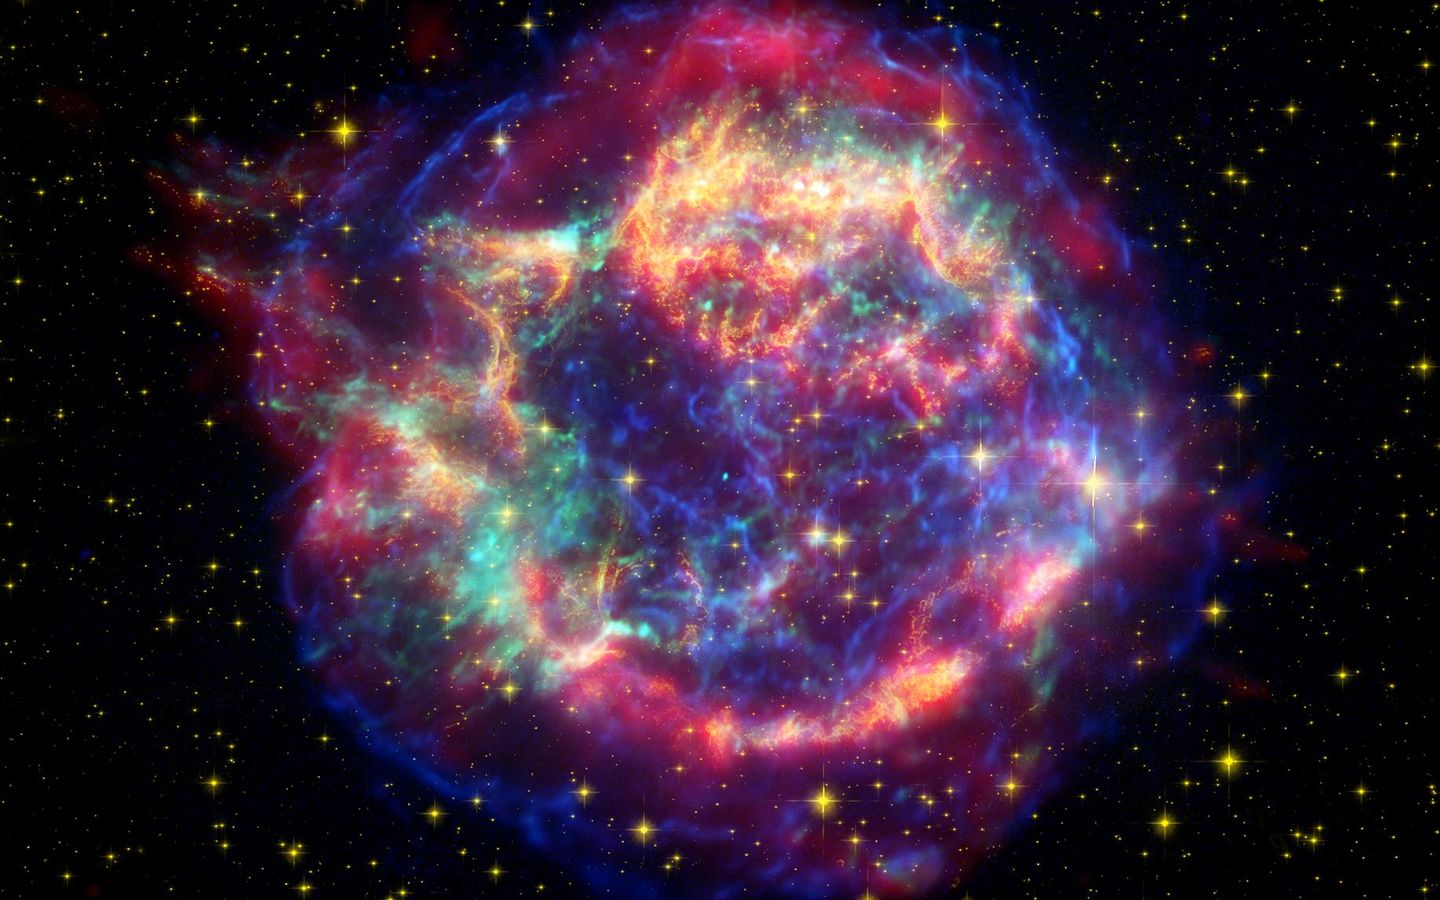 iPTF14hls, la supernova qui intrigue les scientifiques